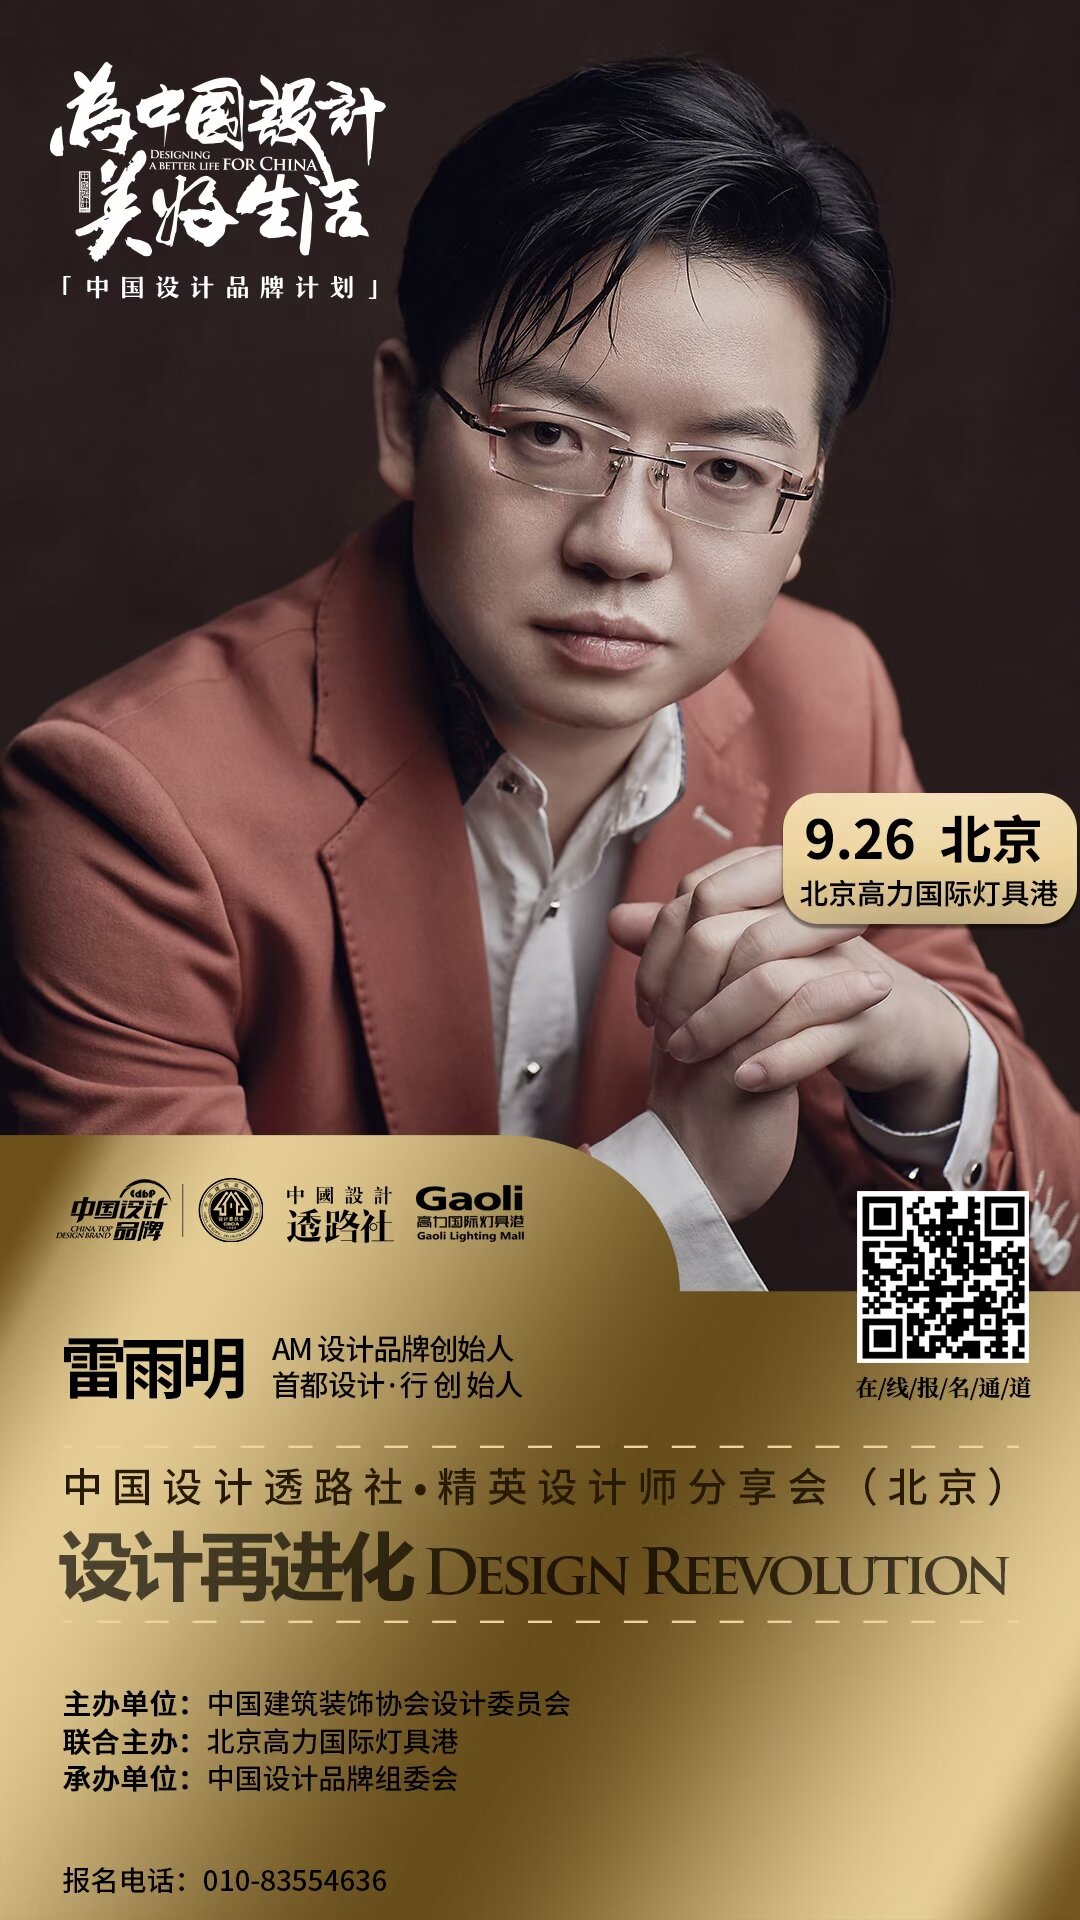 雷雨明先生出席 | 中国设计透路社·城市精英设计师分享会(北京)